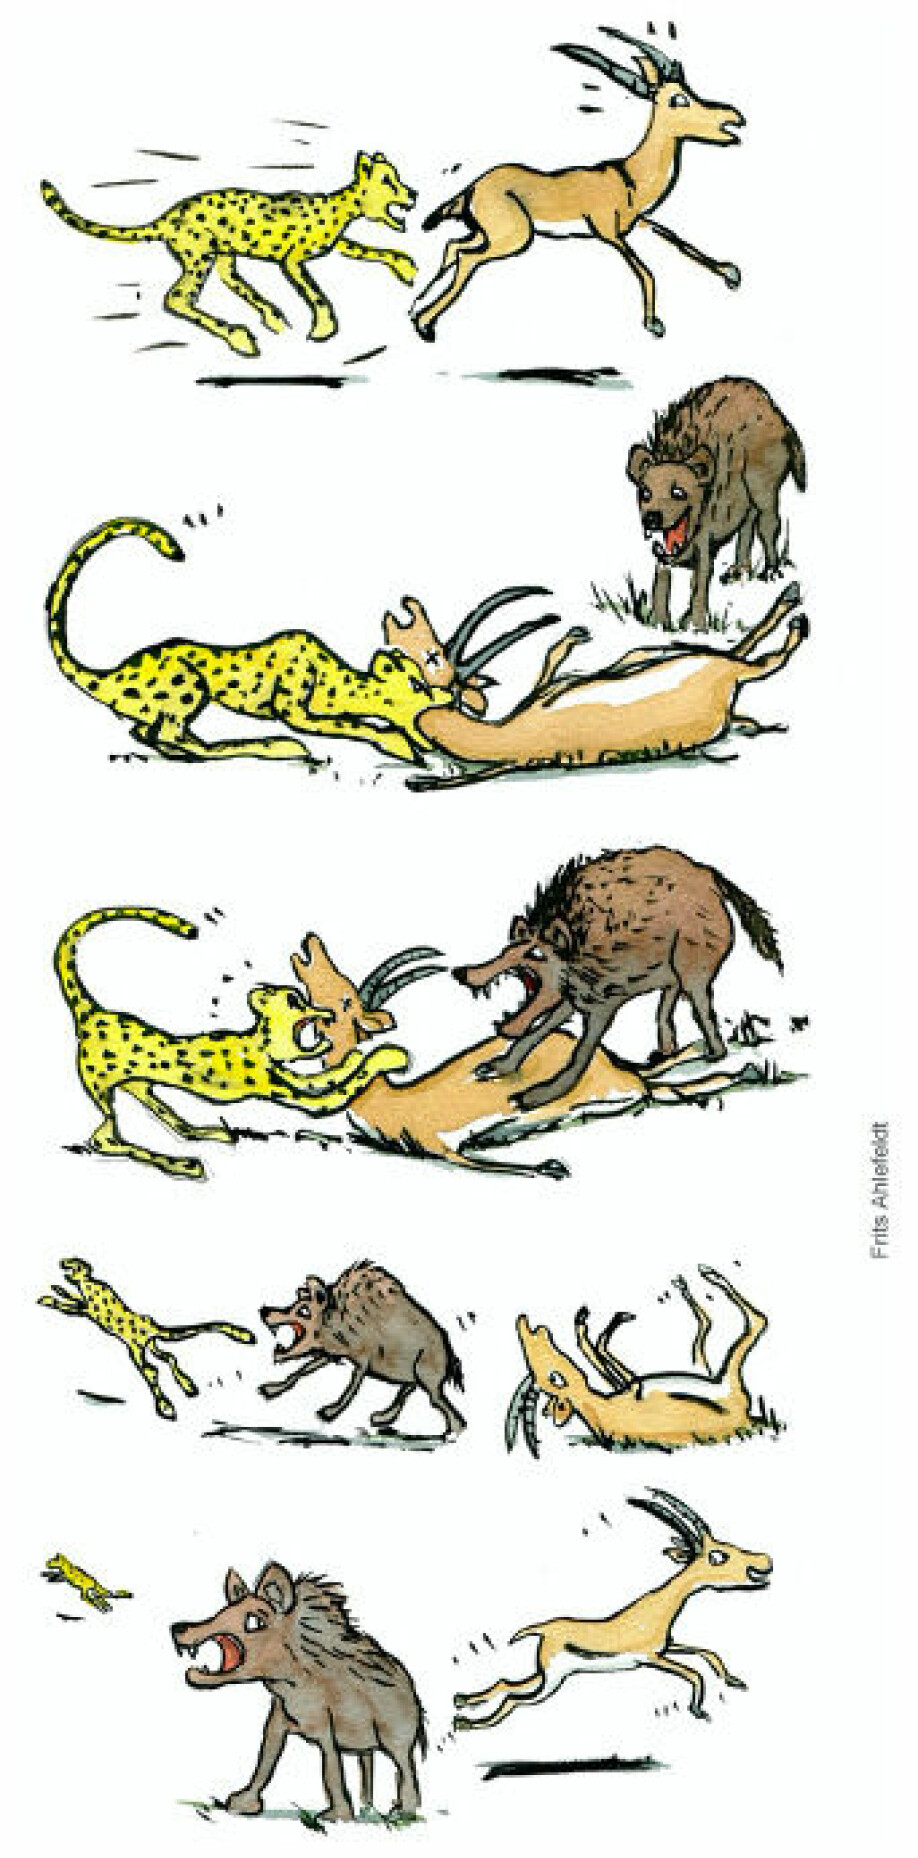 Geparden nedlegger en impala, som spiller død. En hyene forsøker å overta byttet og jager vekk geparden, og da slipper impalaen unna. Tegningen illustrerer de evolusjonære fordelene med å spille død.